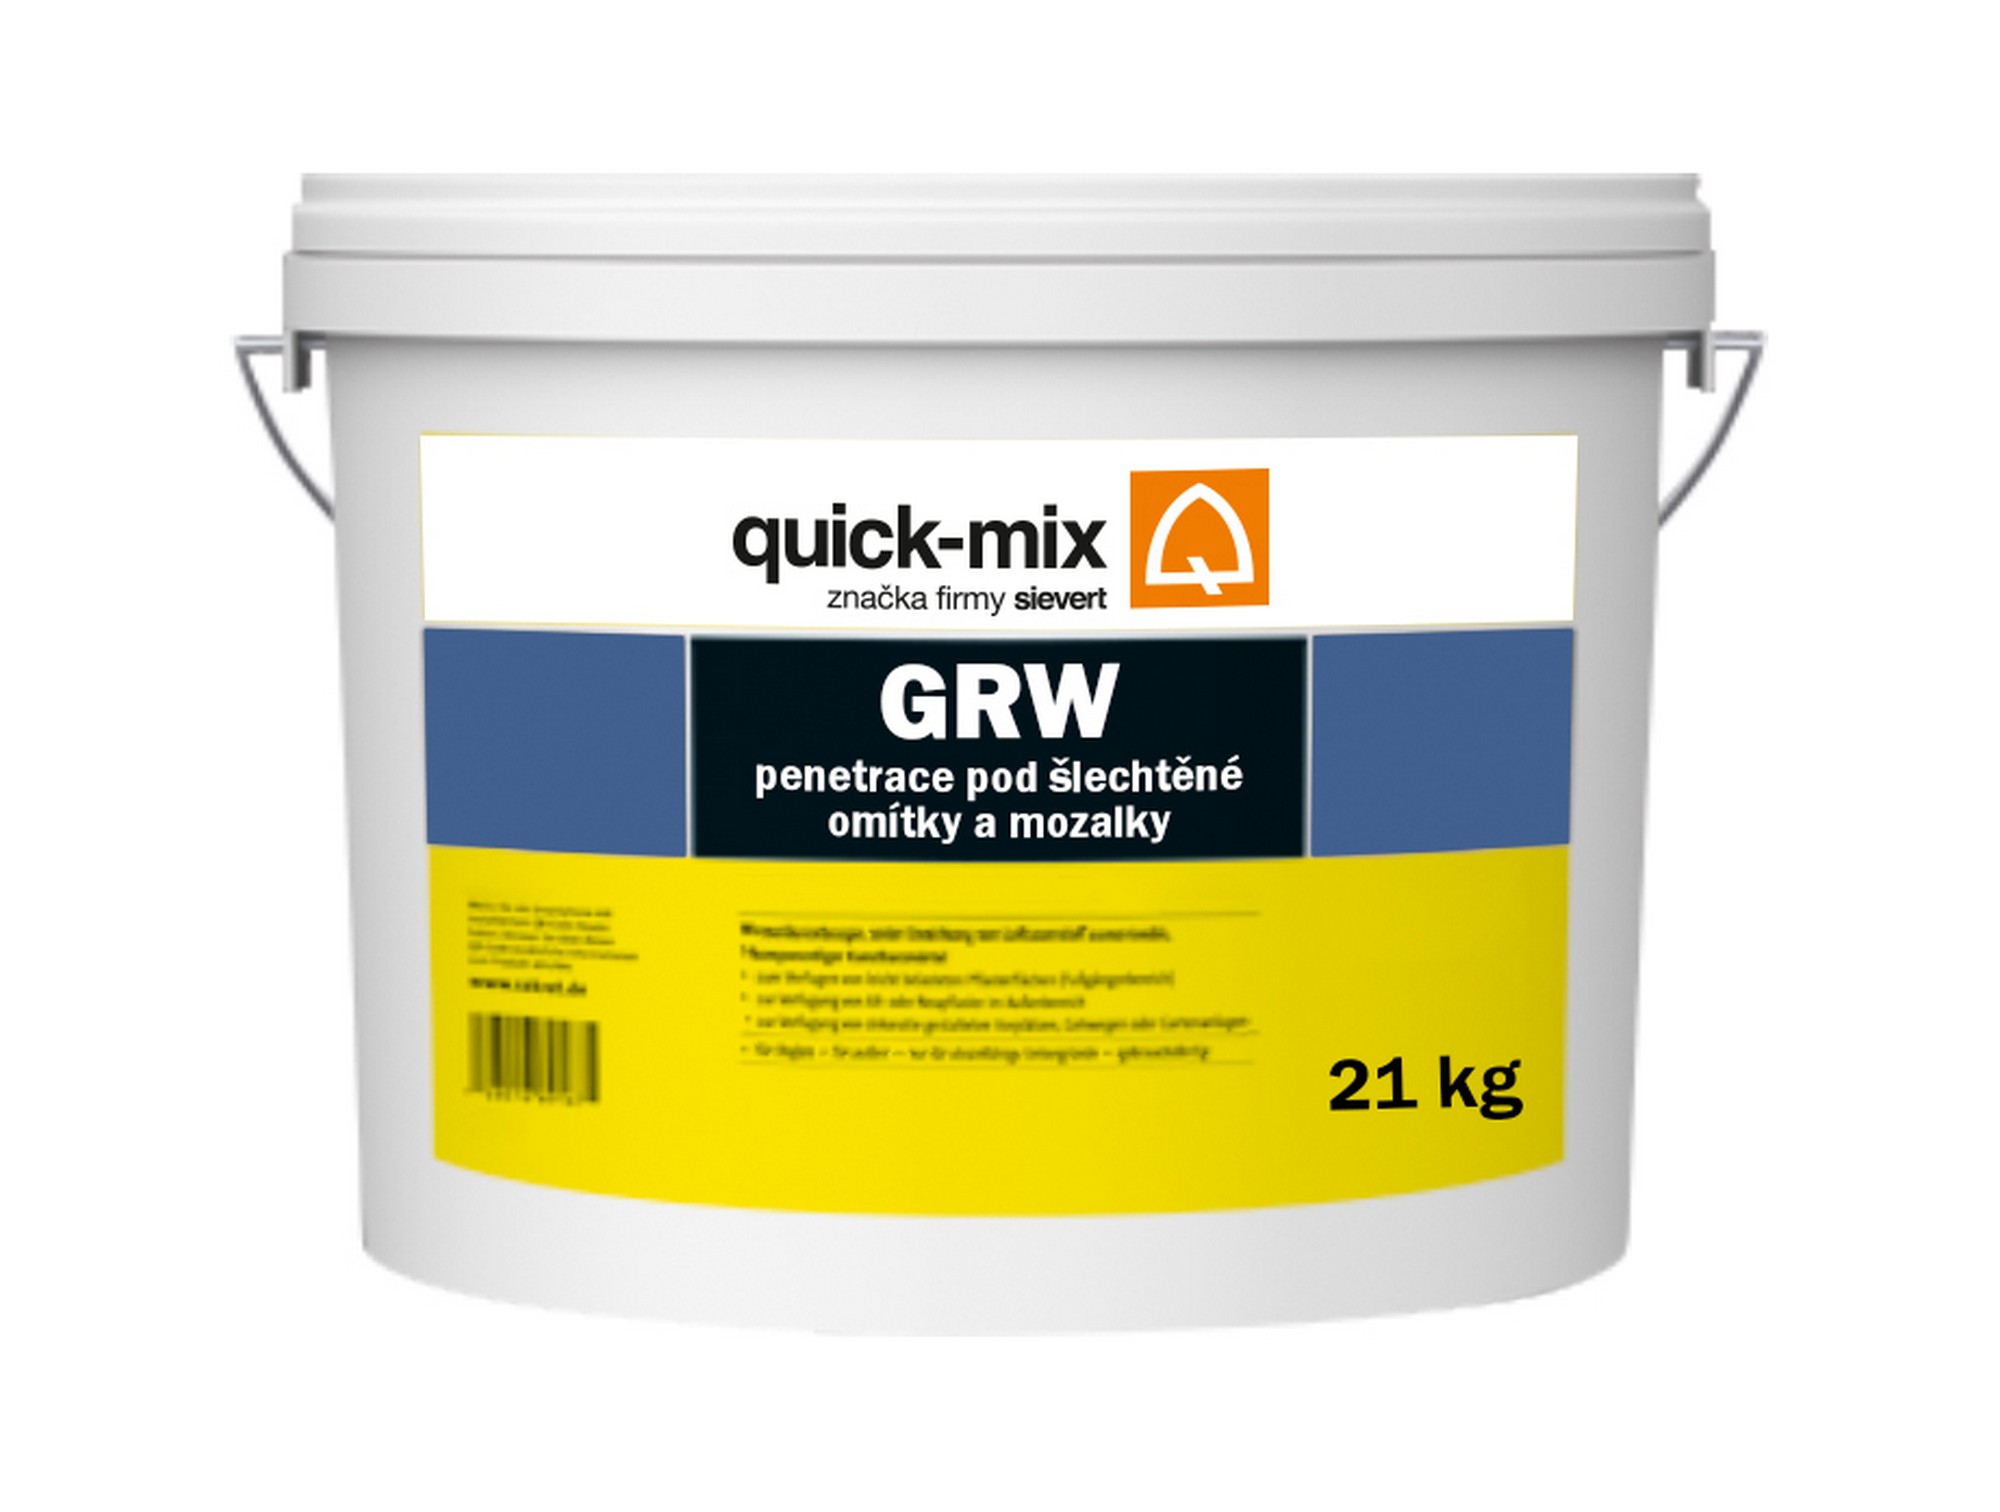 Penetrace Sakret/Quick-mix GRW 21 kg Quick-mix